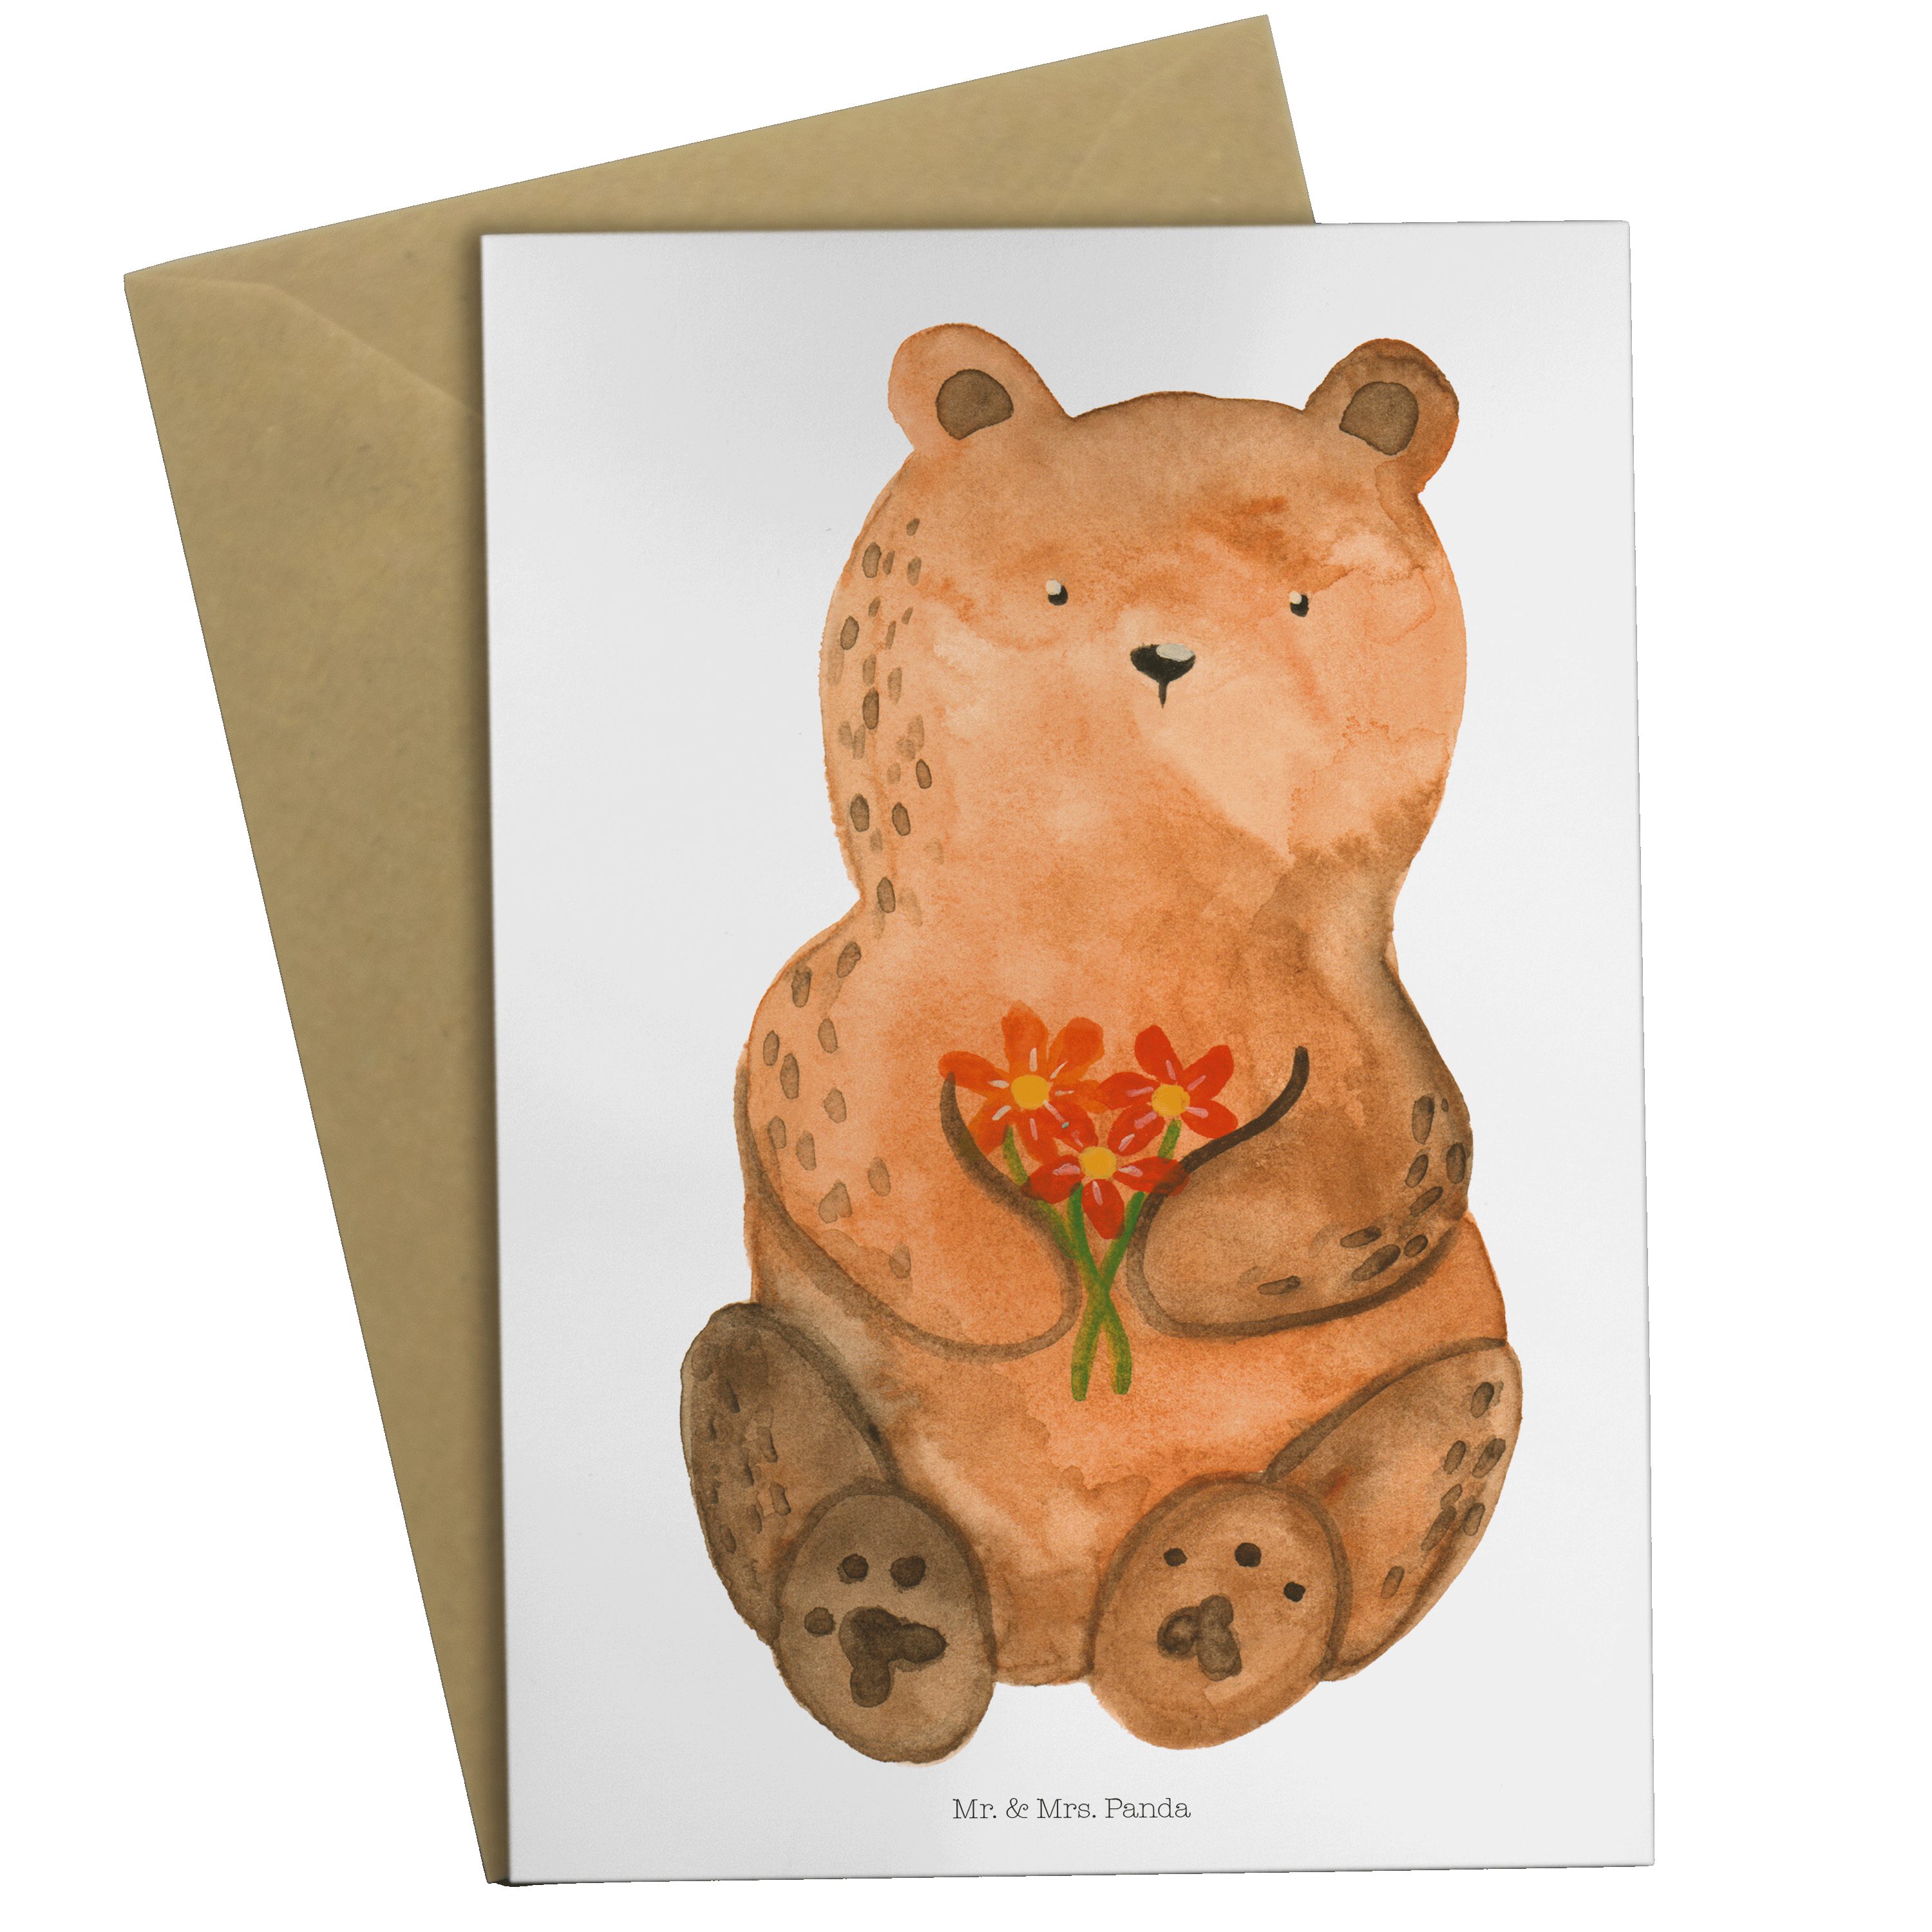 Dankbär Hochzeitskarte, Weiß Mrs. Grußkarte & - Geschenk, Mr. Klappka Dankeschön, - Panda Teddy,